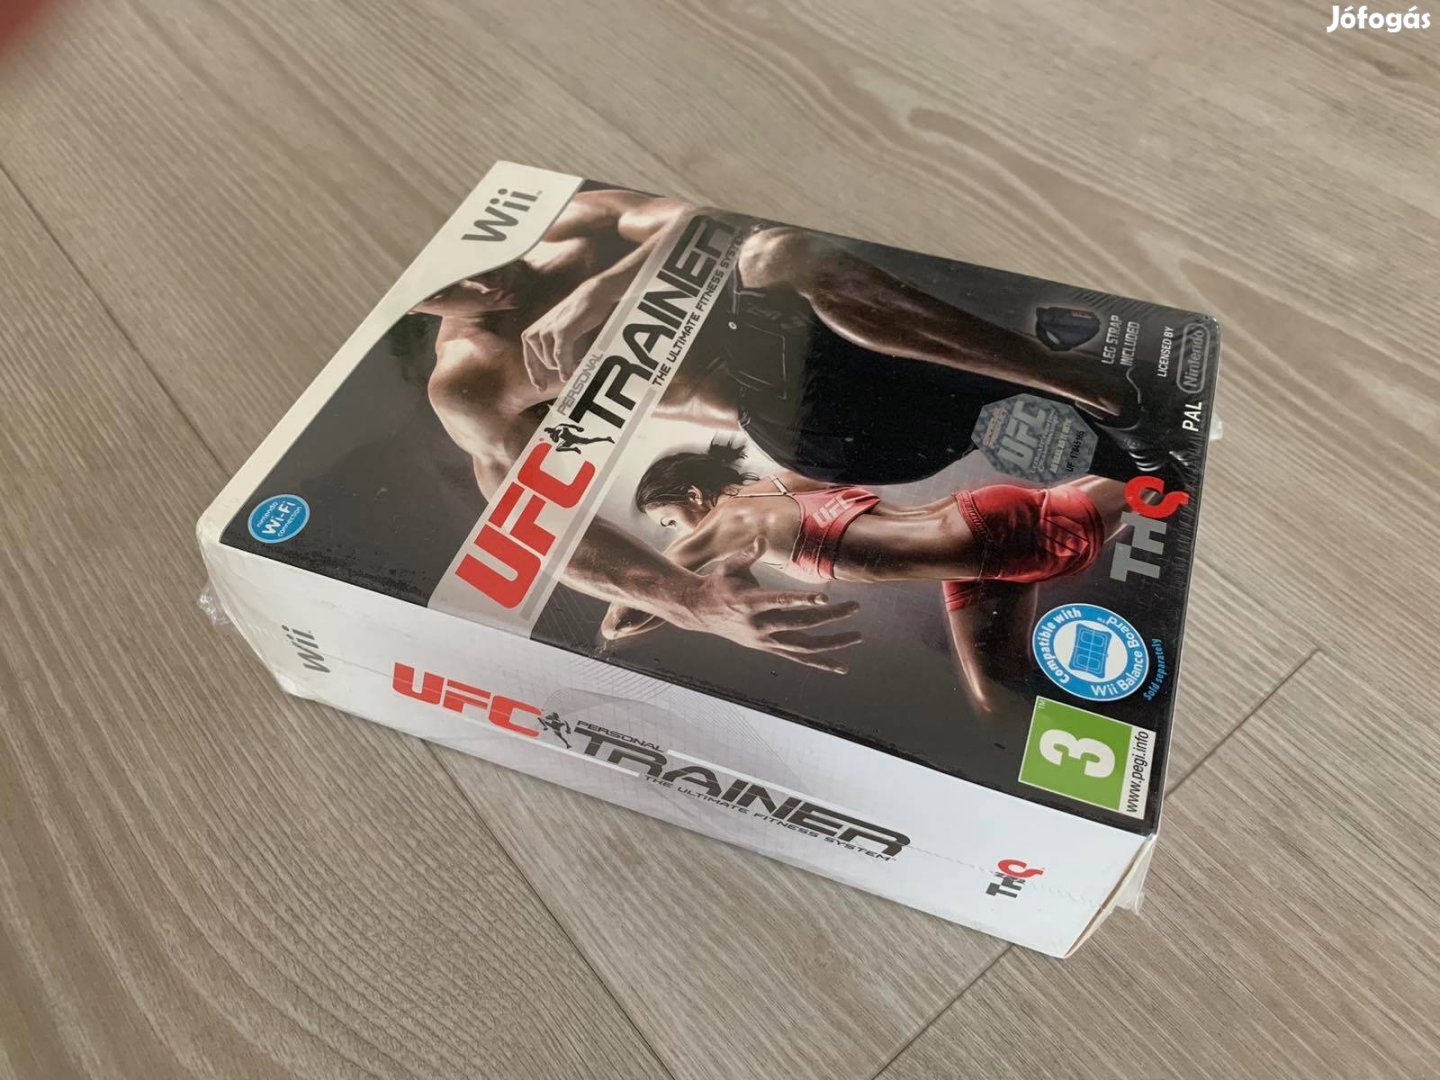 UFC personal trainer with leg strap Wii játék eladó - új